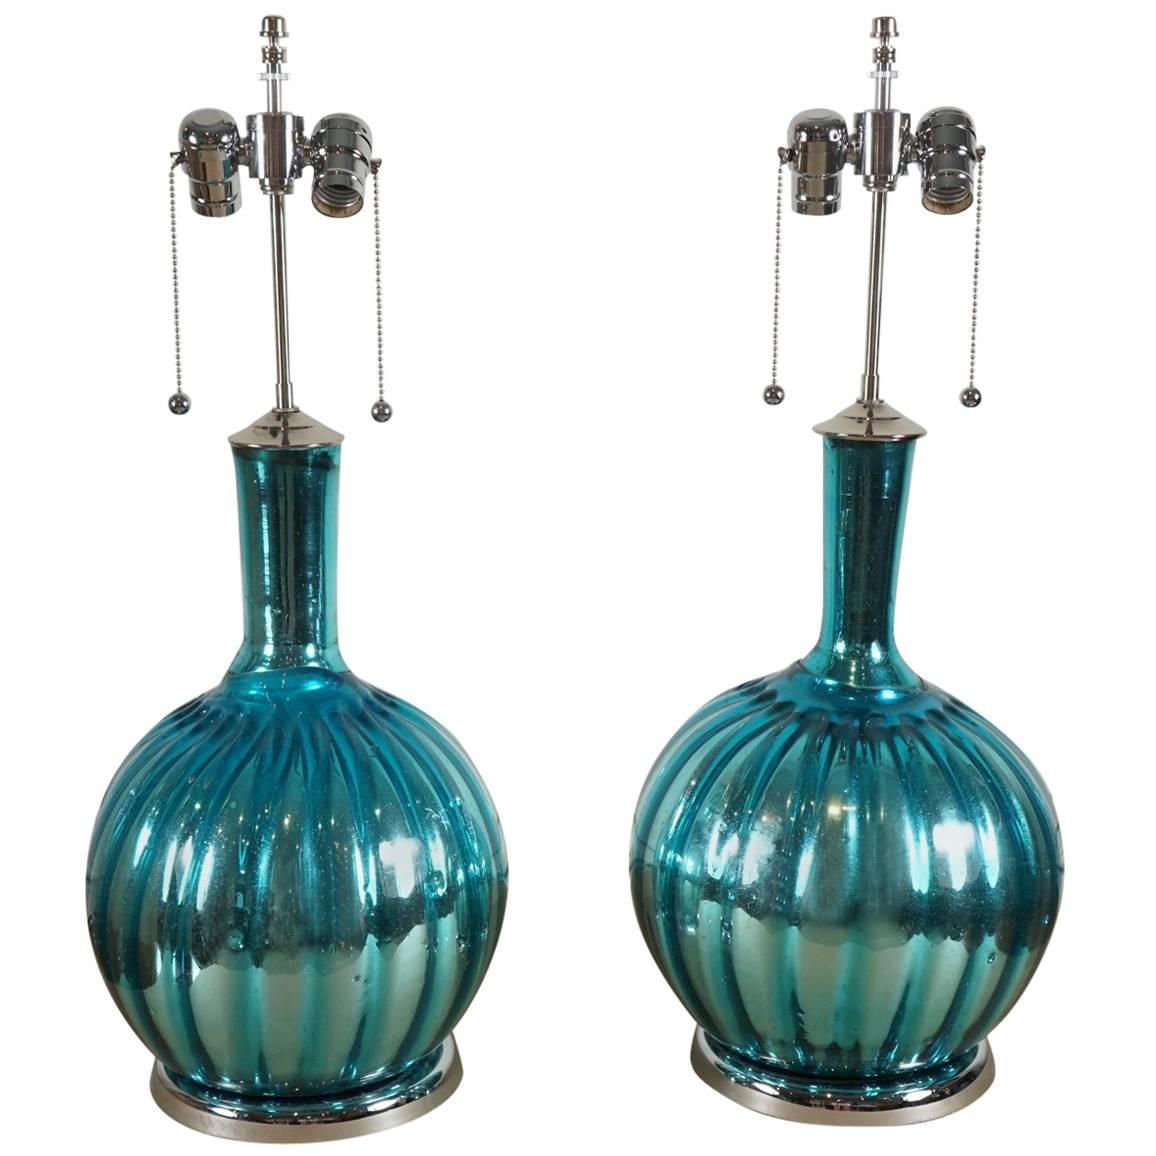 Pair of Mercury Lamps in Aqua Blue